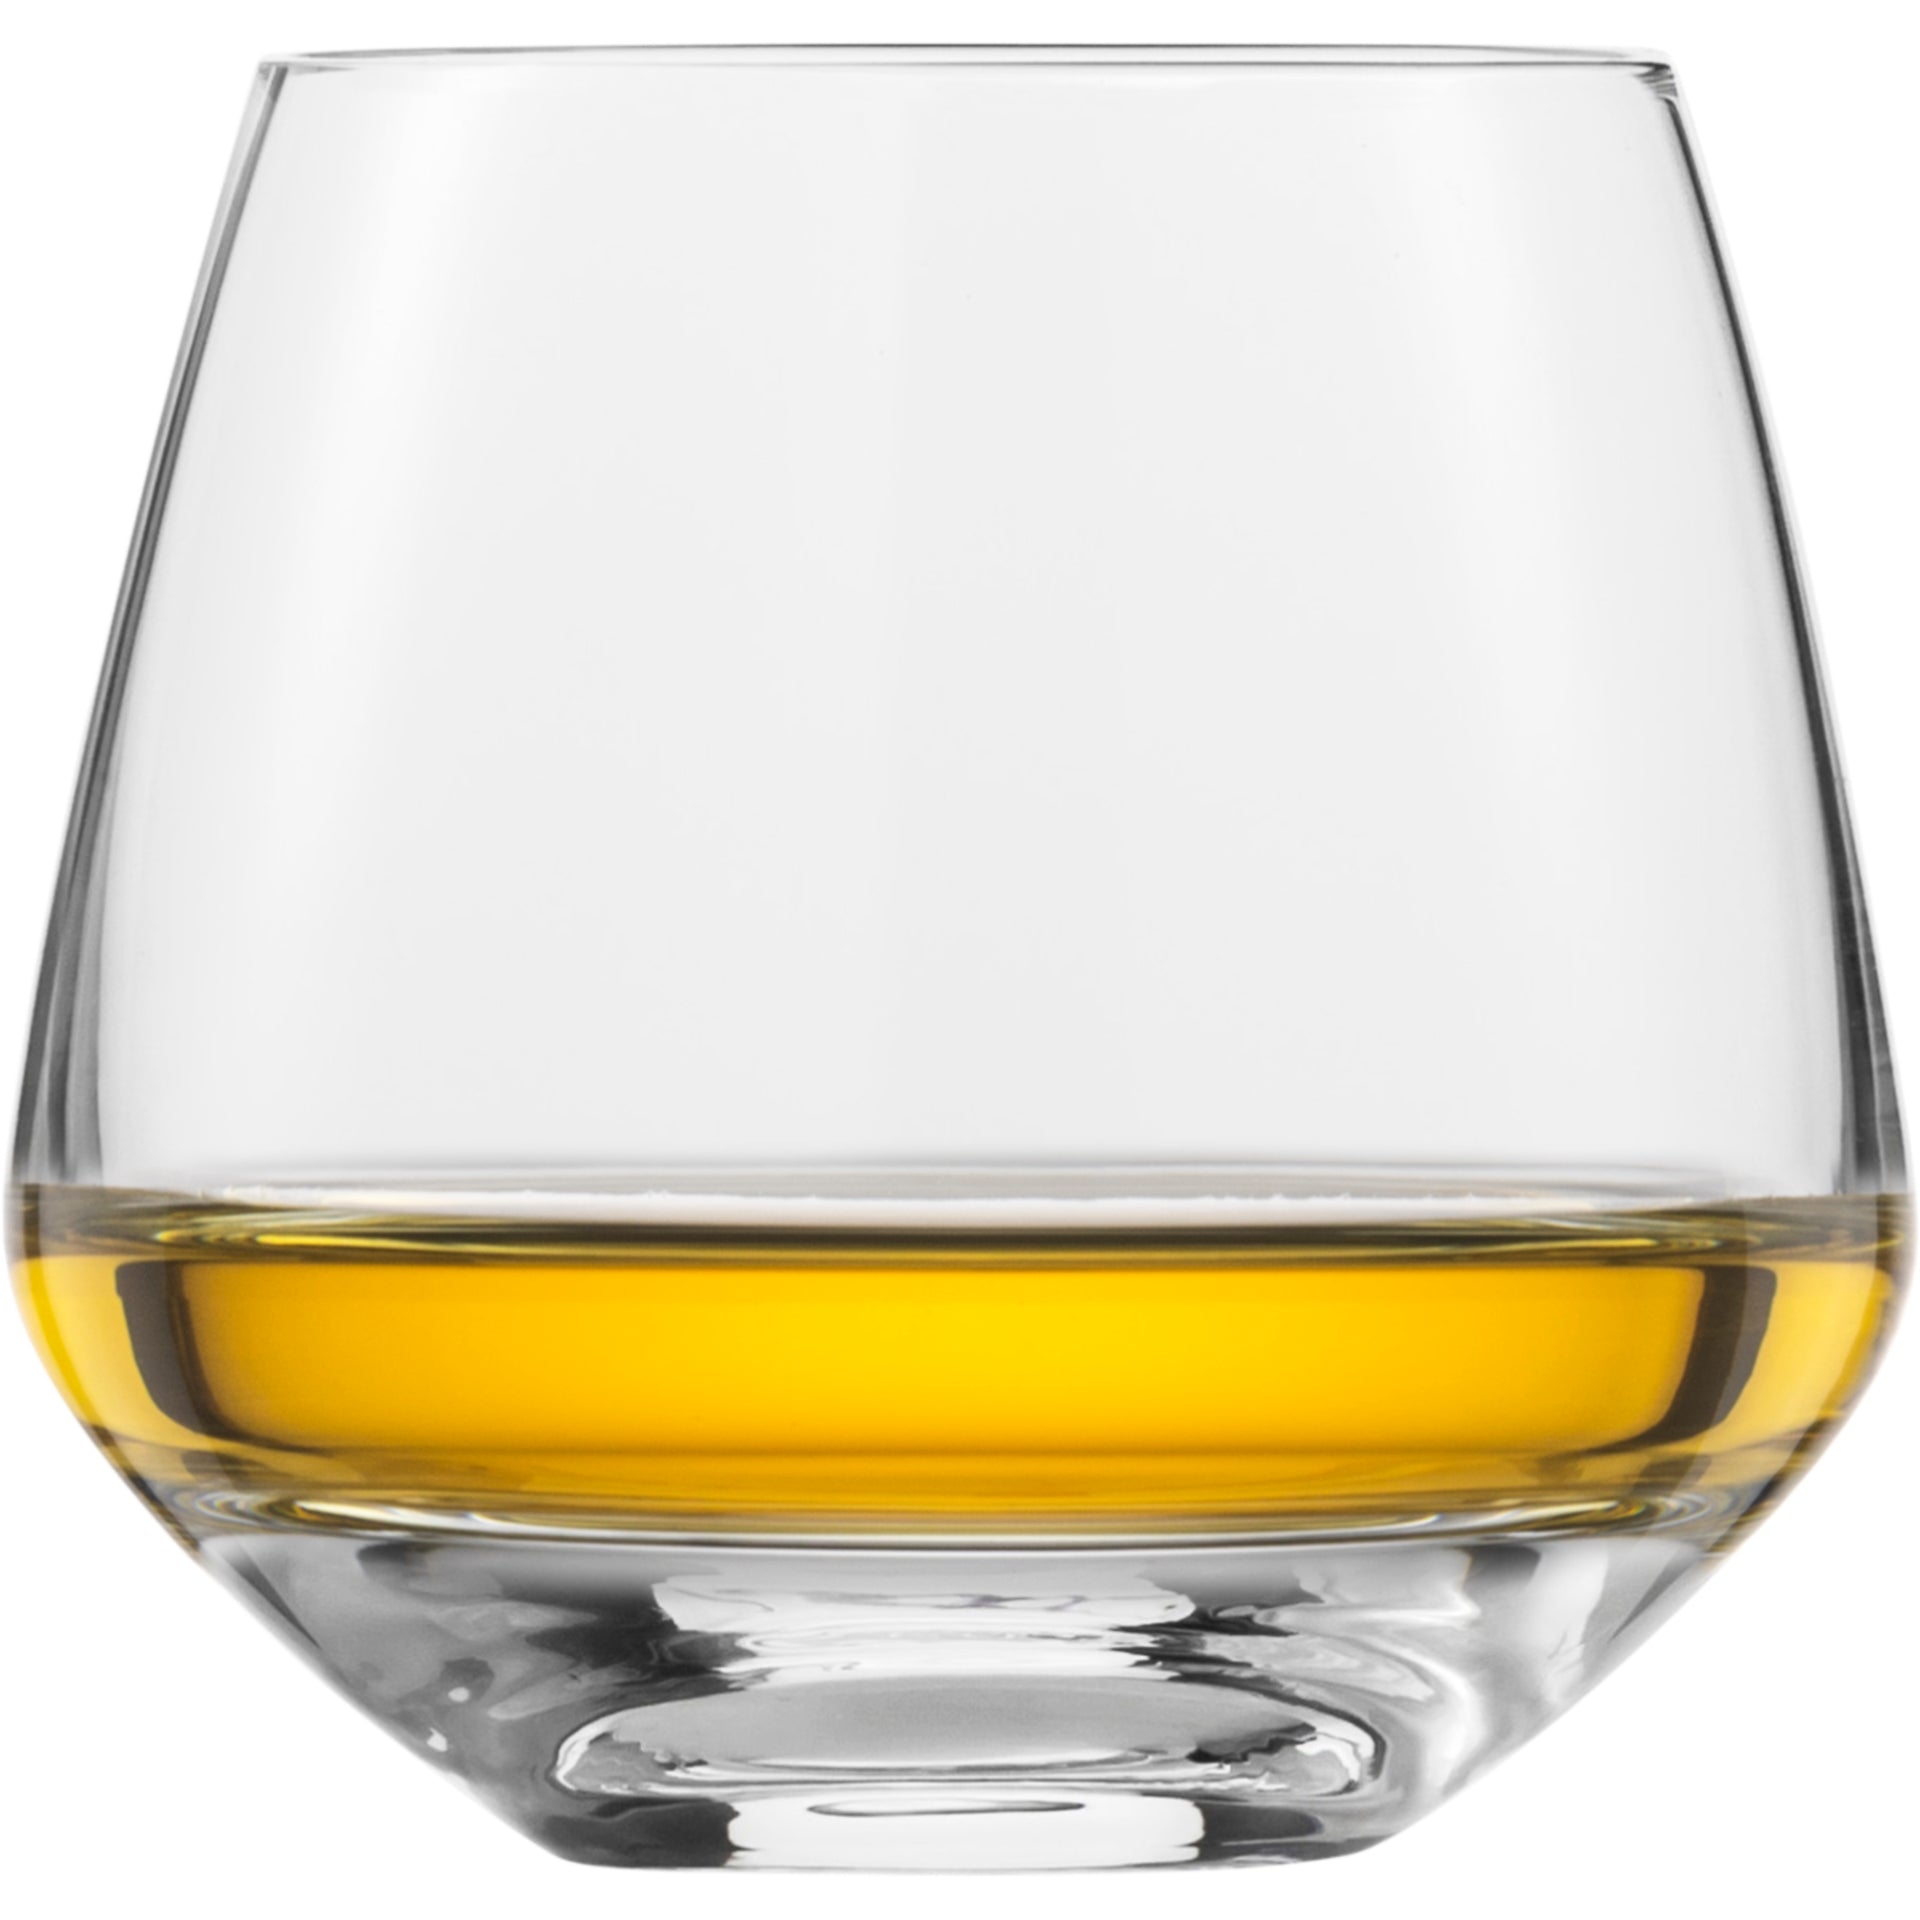 Eisch Whiskyglas Sky SENSISPLUS - 4 Stück im Geschenkkarton 518/14